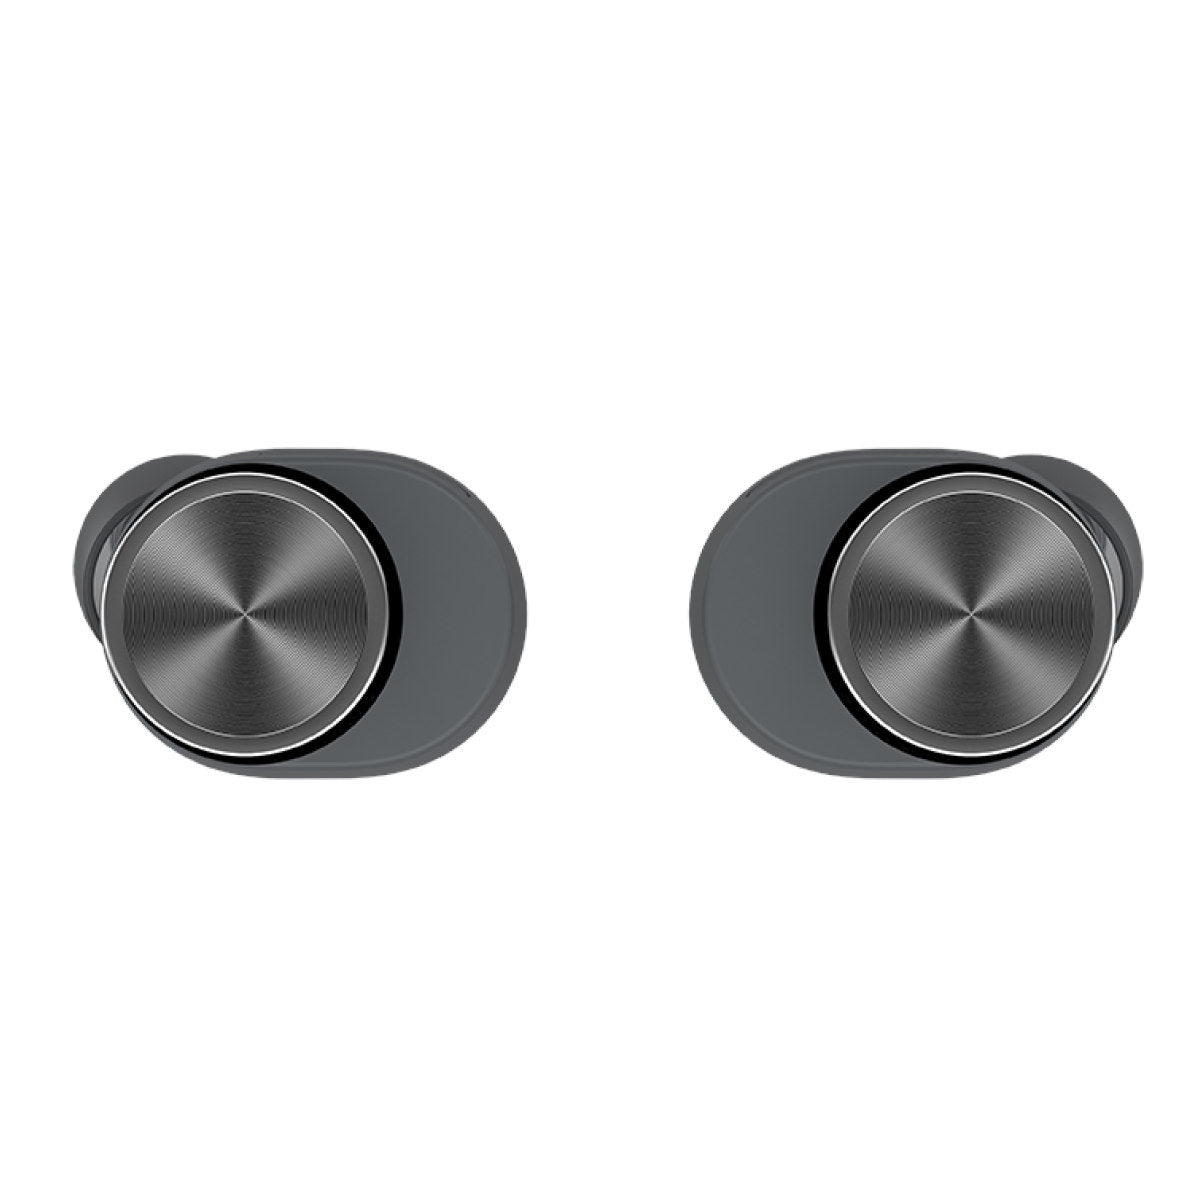 Bowers & Wilkins (B&W) Pi5 S2 In-ear True Wireless Earbuds (Storm Grey) 